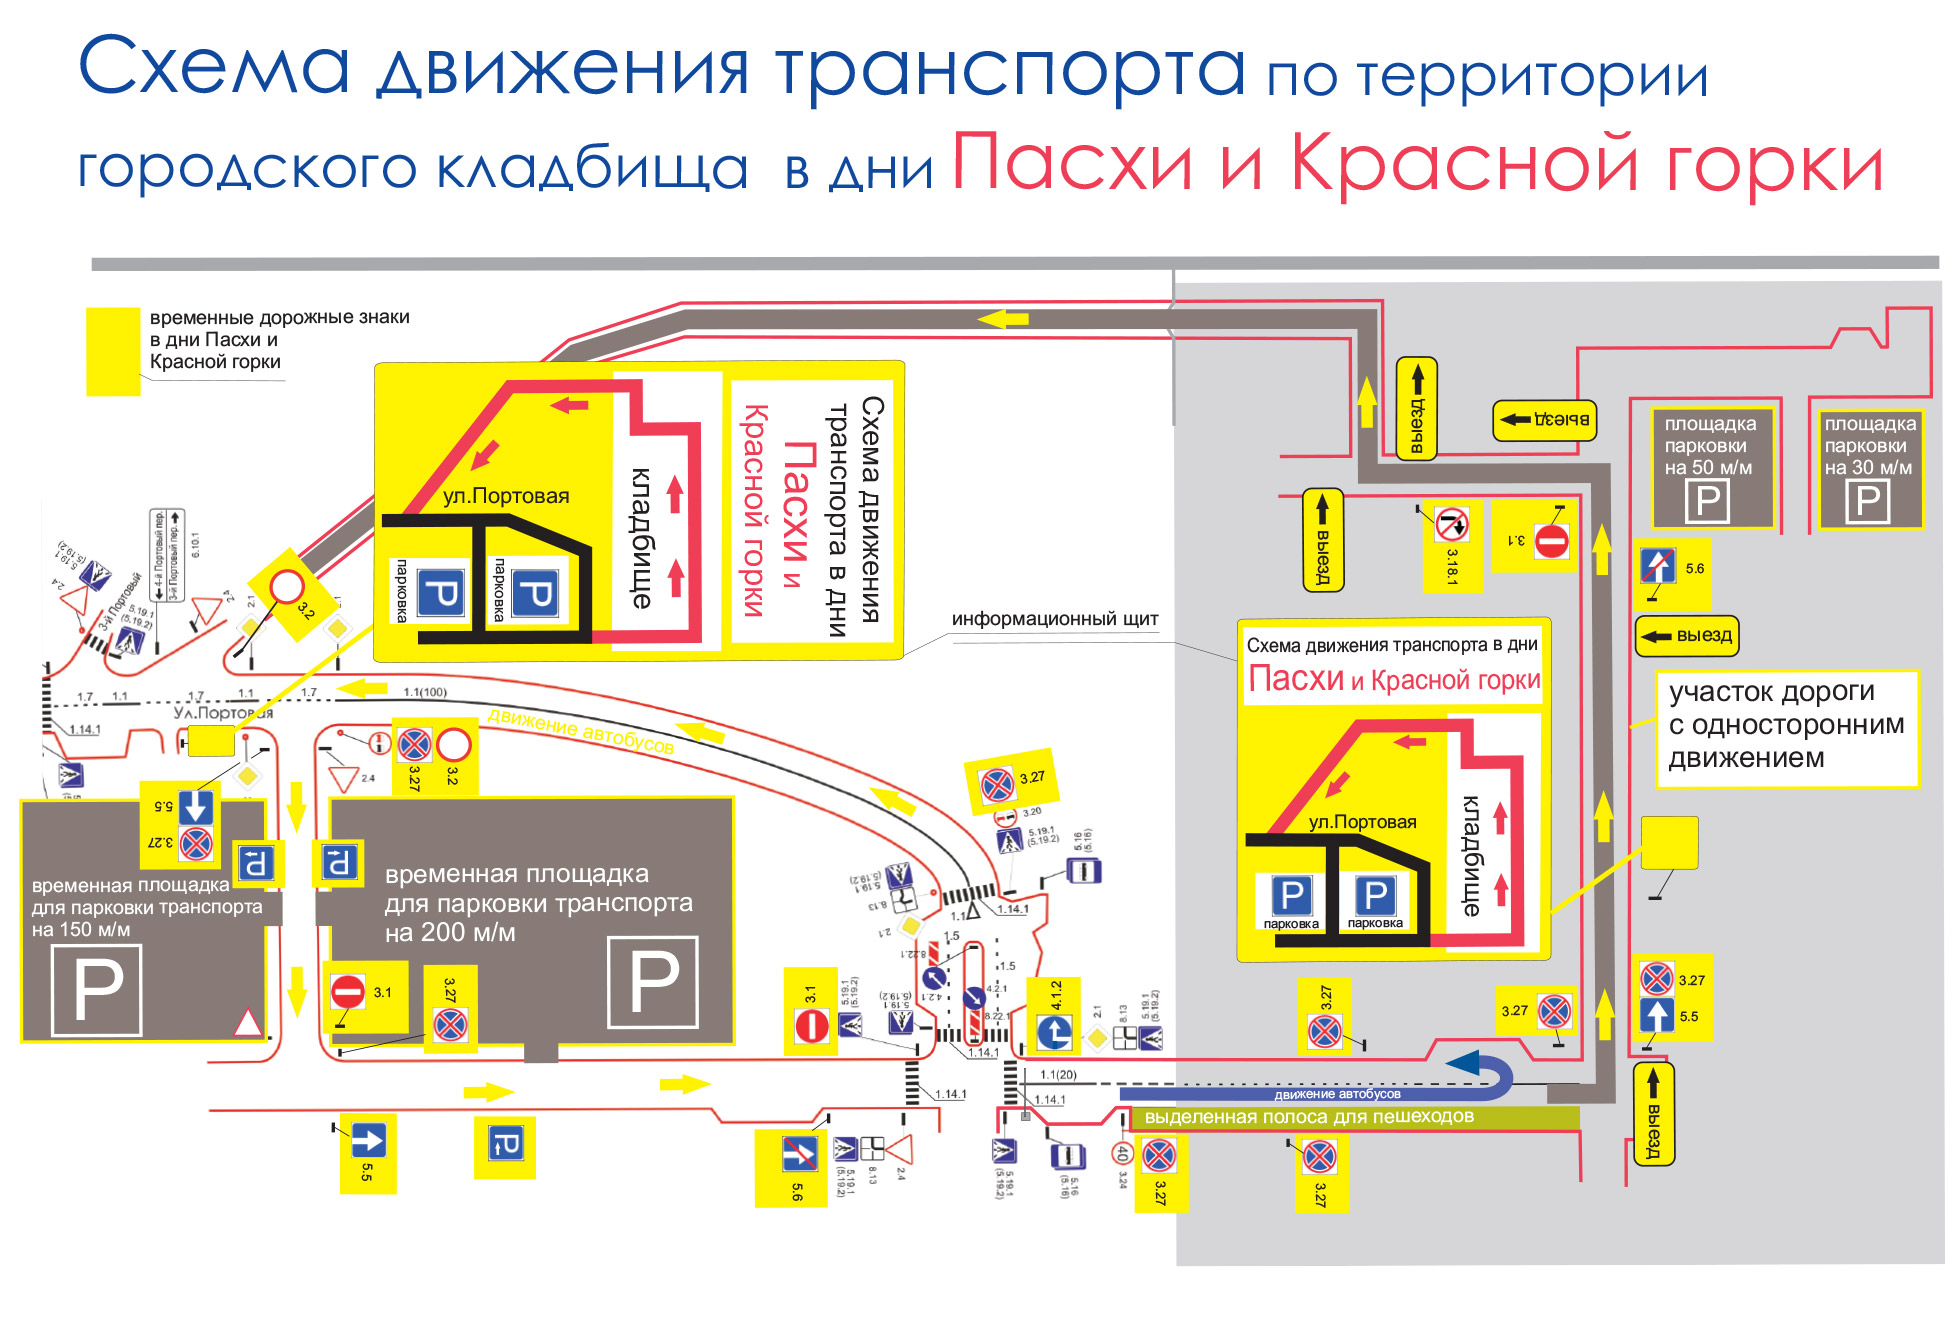 Схема движения автотранспорта к территории городского кладбища «Ячнево» 16 и 23 апреля 2017 года